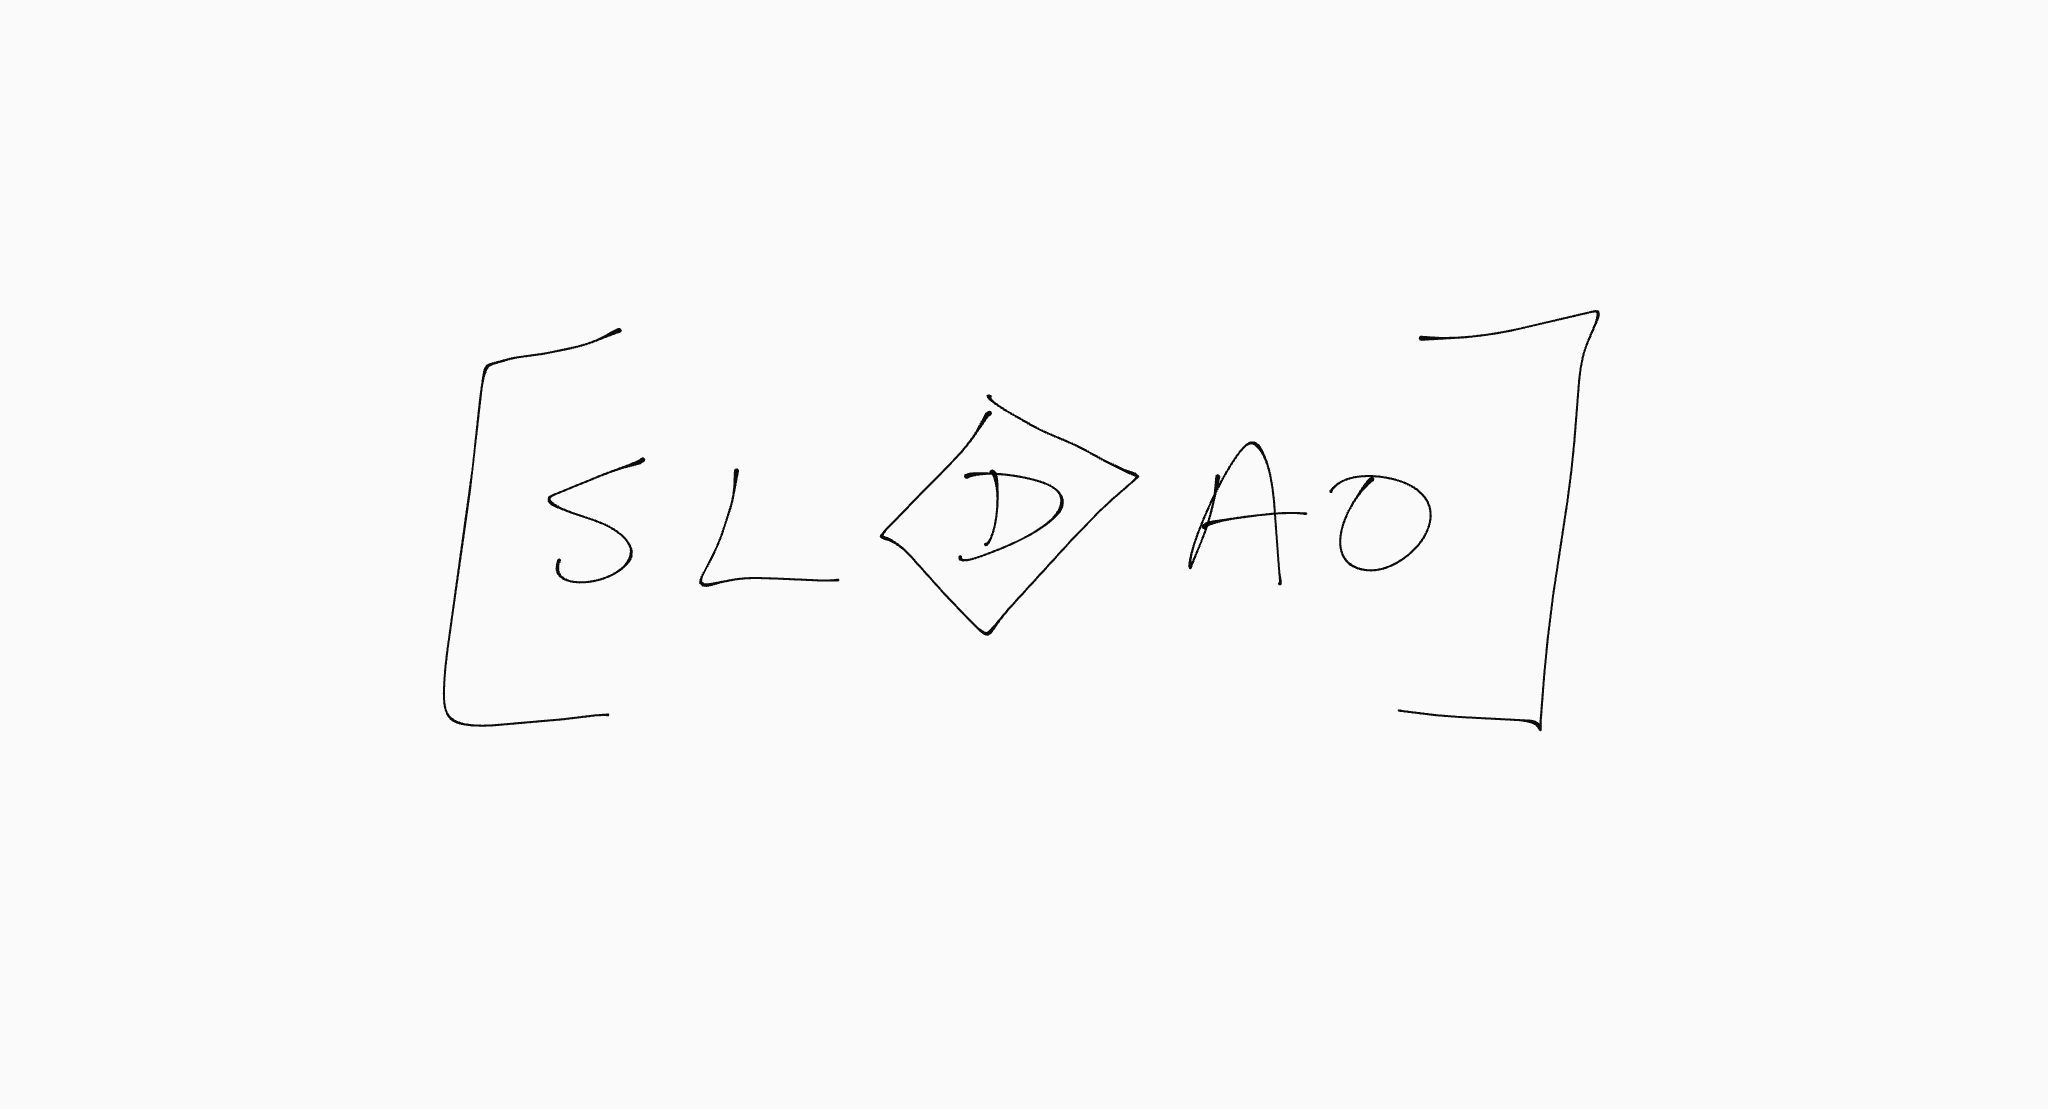 SLDAO Diagram